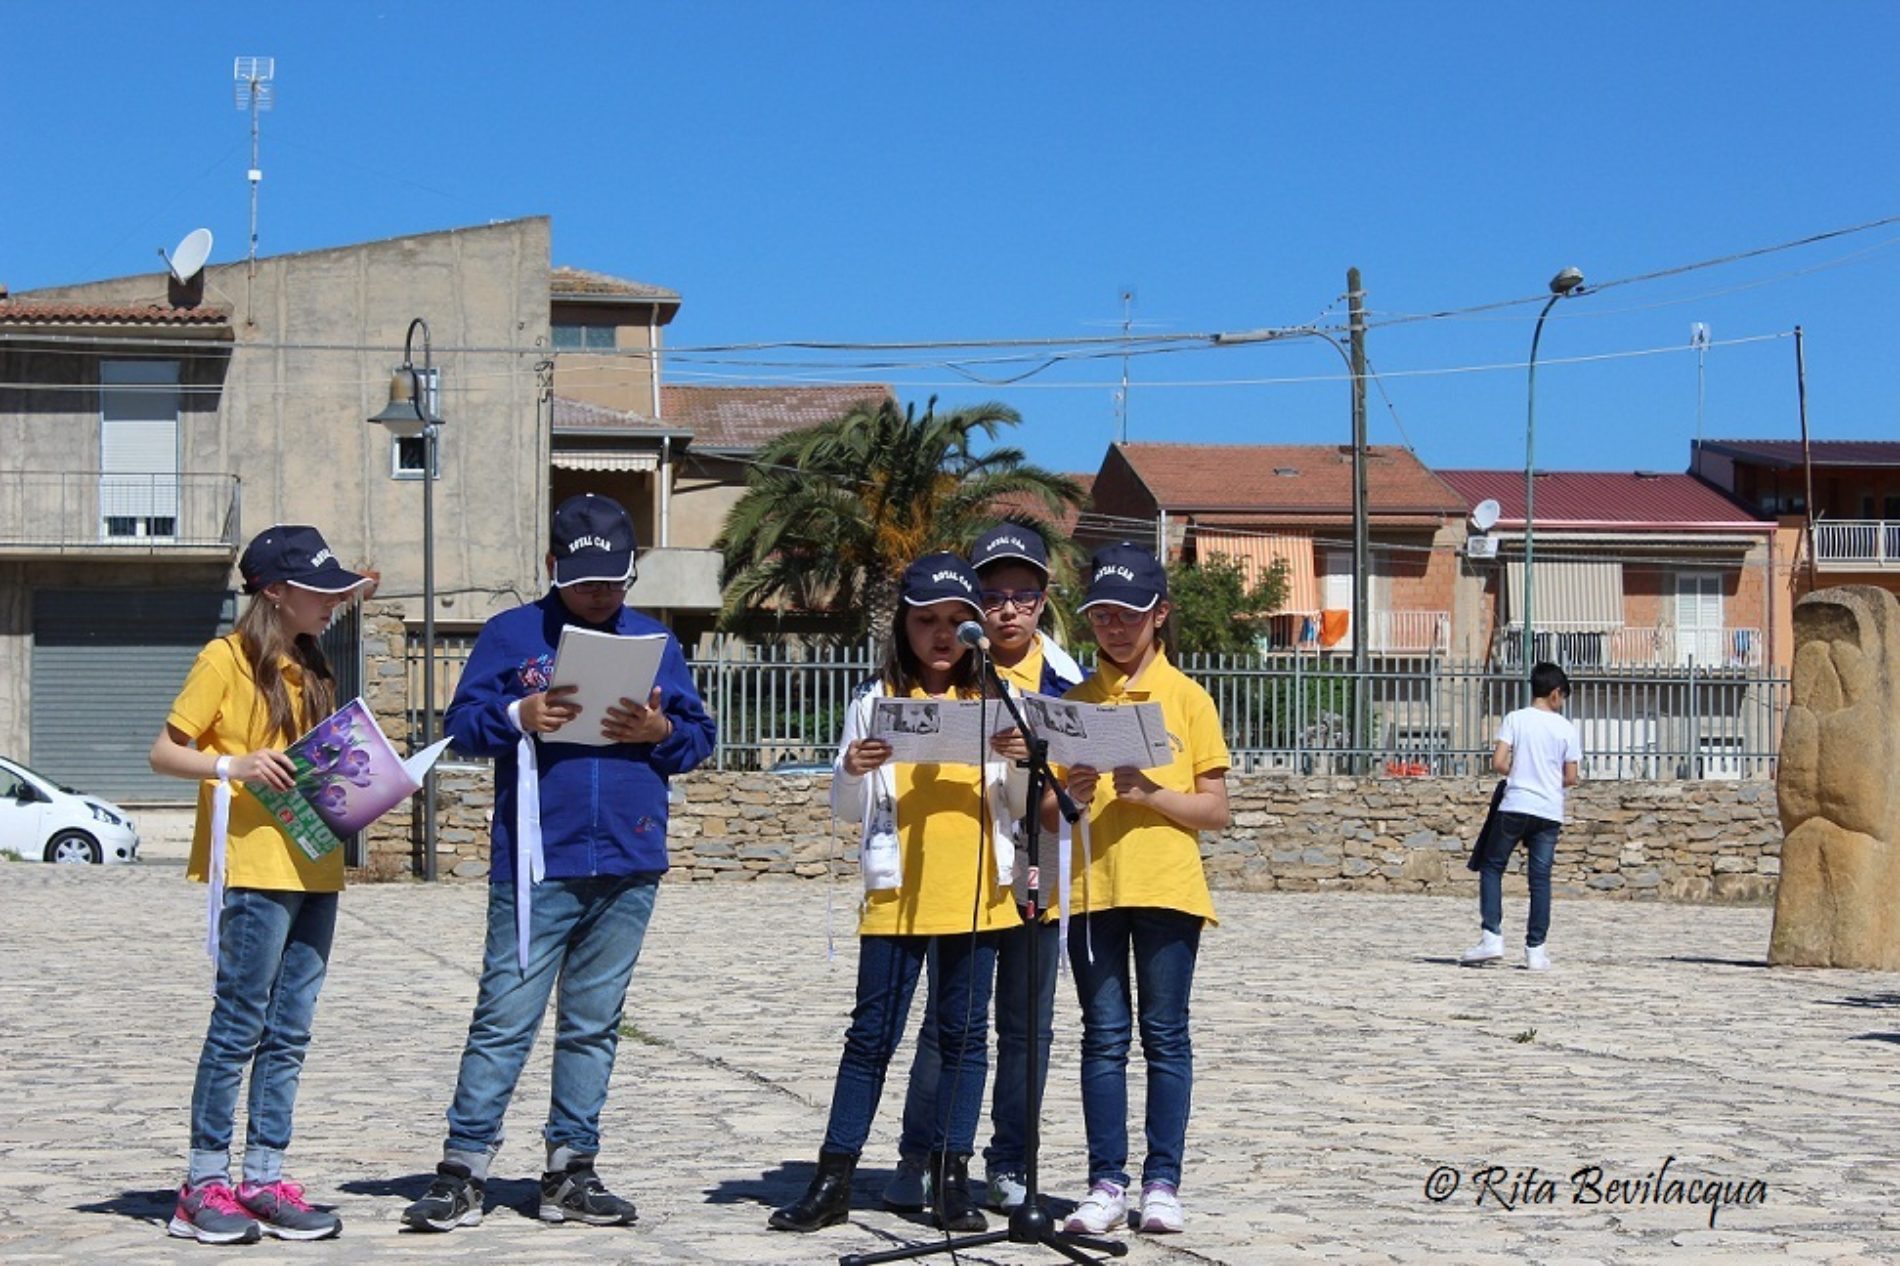 Barrafranca: Festa della lettura e del libro – “Uniti nella parola in nome della libertà”